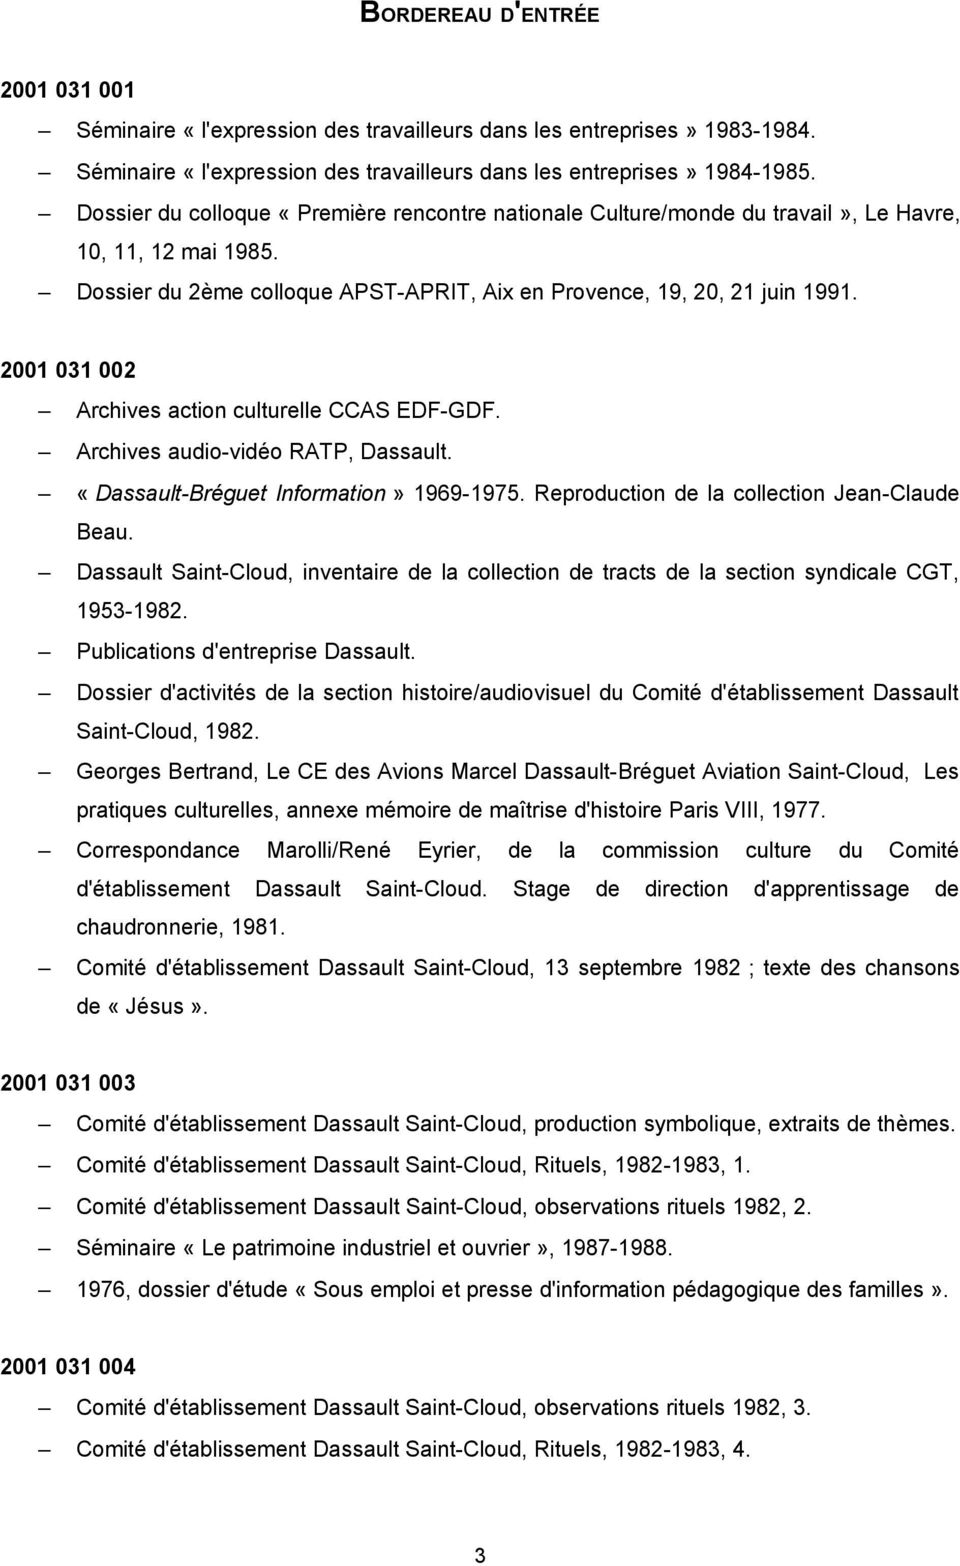 2001 031 002 Archives action culturelle CCAS EDF-GDF. Archives audio-vidéo RATP, Dassault. «Dassault-Bréguet Information» 1969-1975. Reproduction de la collection Jean-Claude Beau.